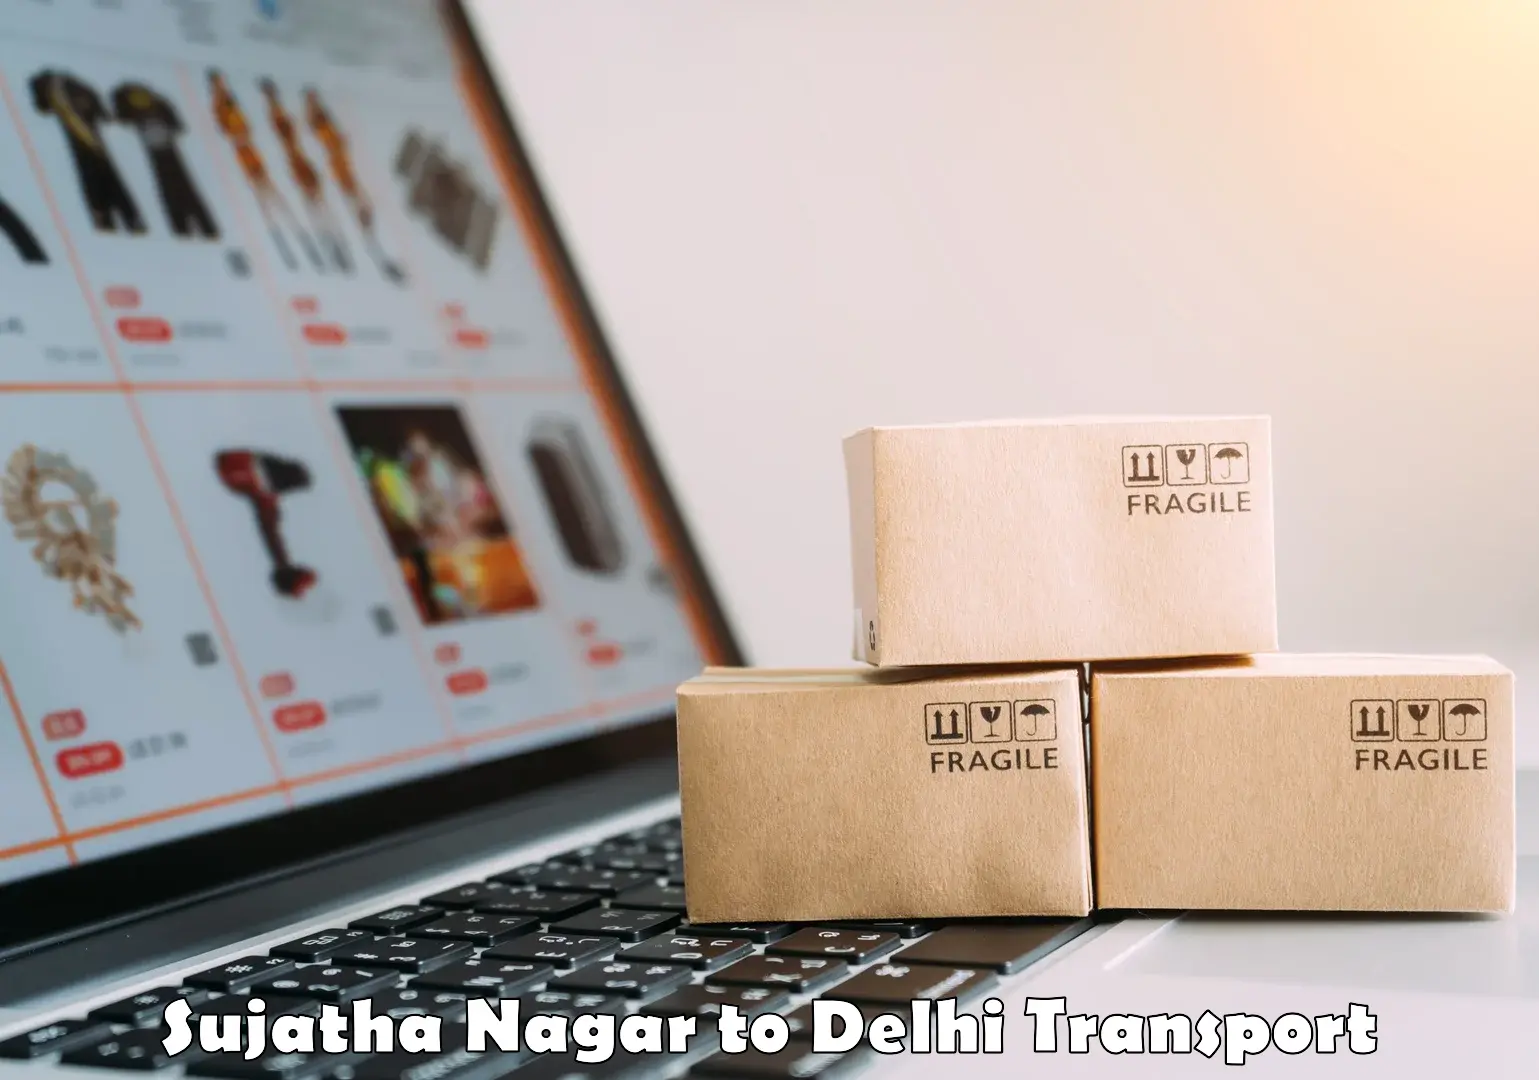 Shipping services Sujatha Nagar to University of Delhi